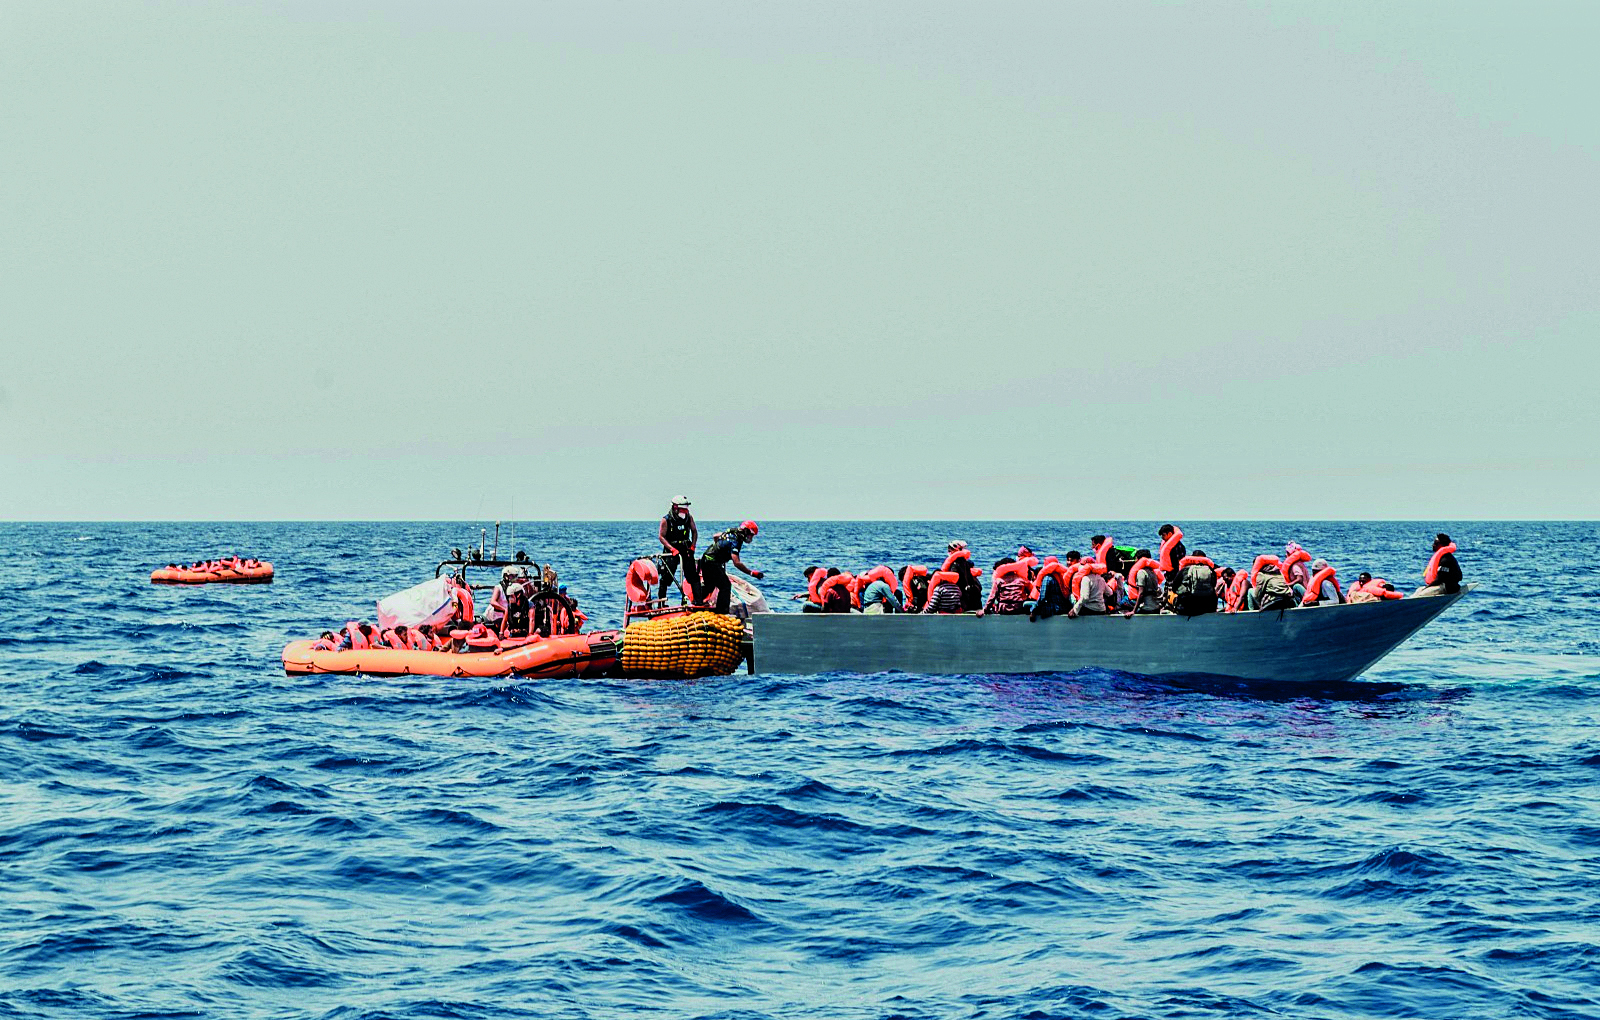 Fotografia. Pequenas embarcações repletas de passageiros sobre as águas do mar. Os passageiros vestem coletes salva-vidas laranjas.